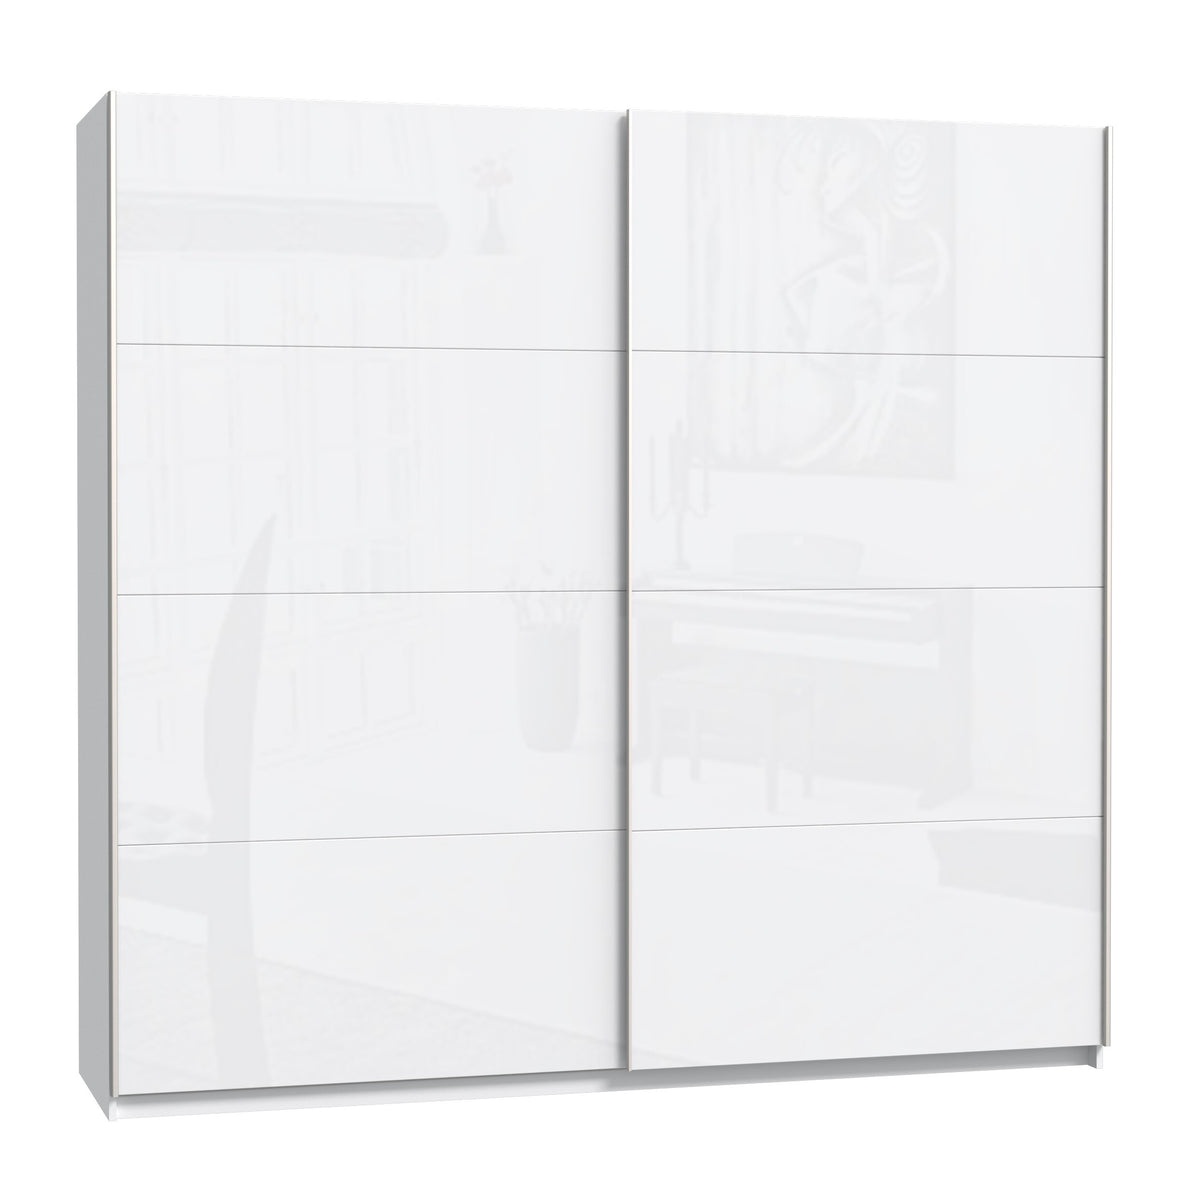 Šatní skříň Stefi - 220x210x61 cm (bílá lesk)